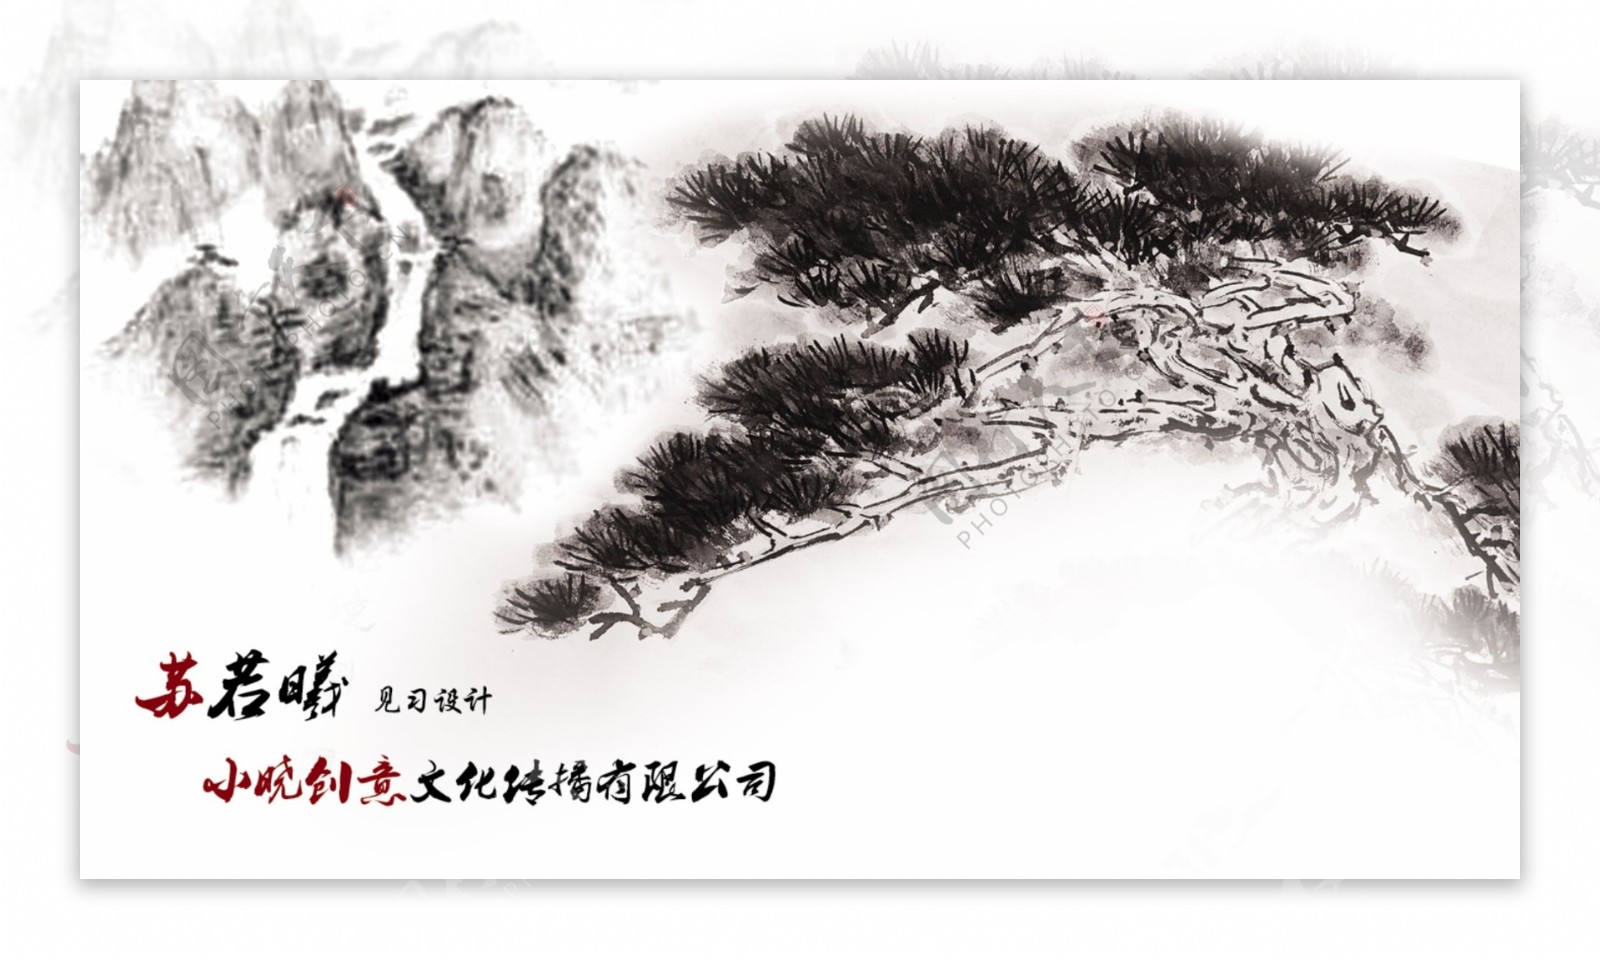 中国风水墨写意名片卡片设计PSD素材